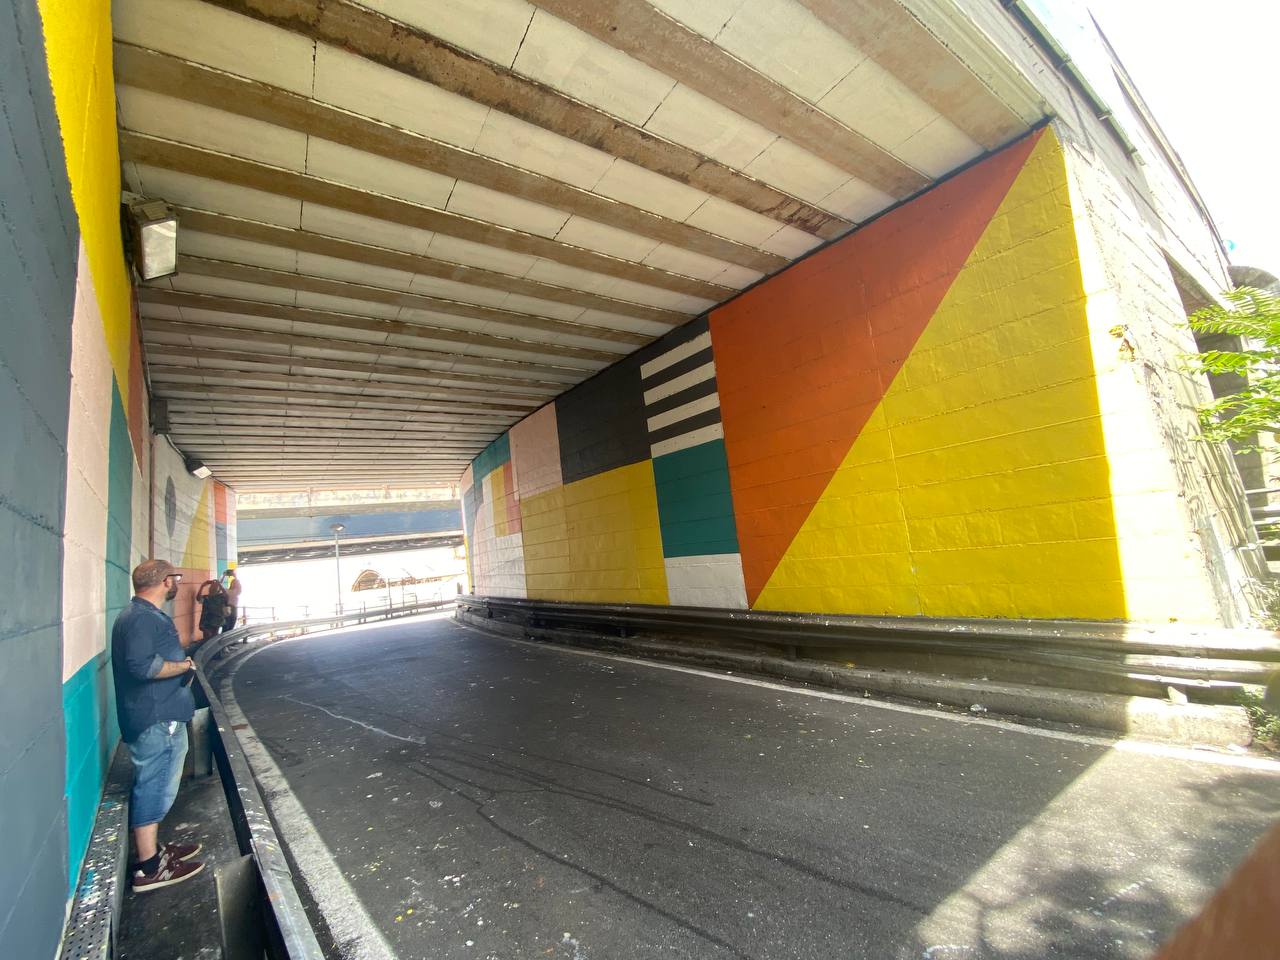 Genova, la sopraelevata si rifà il look con uno dei più grandi lavori di street art del mondo